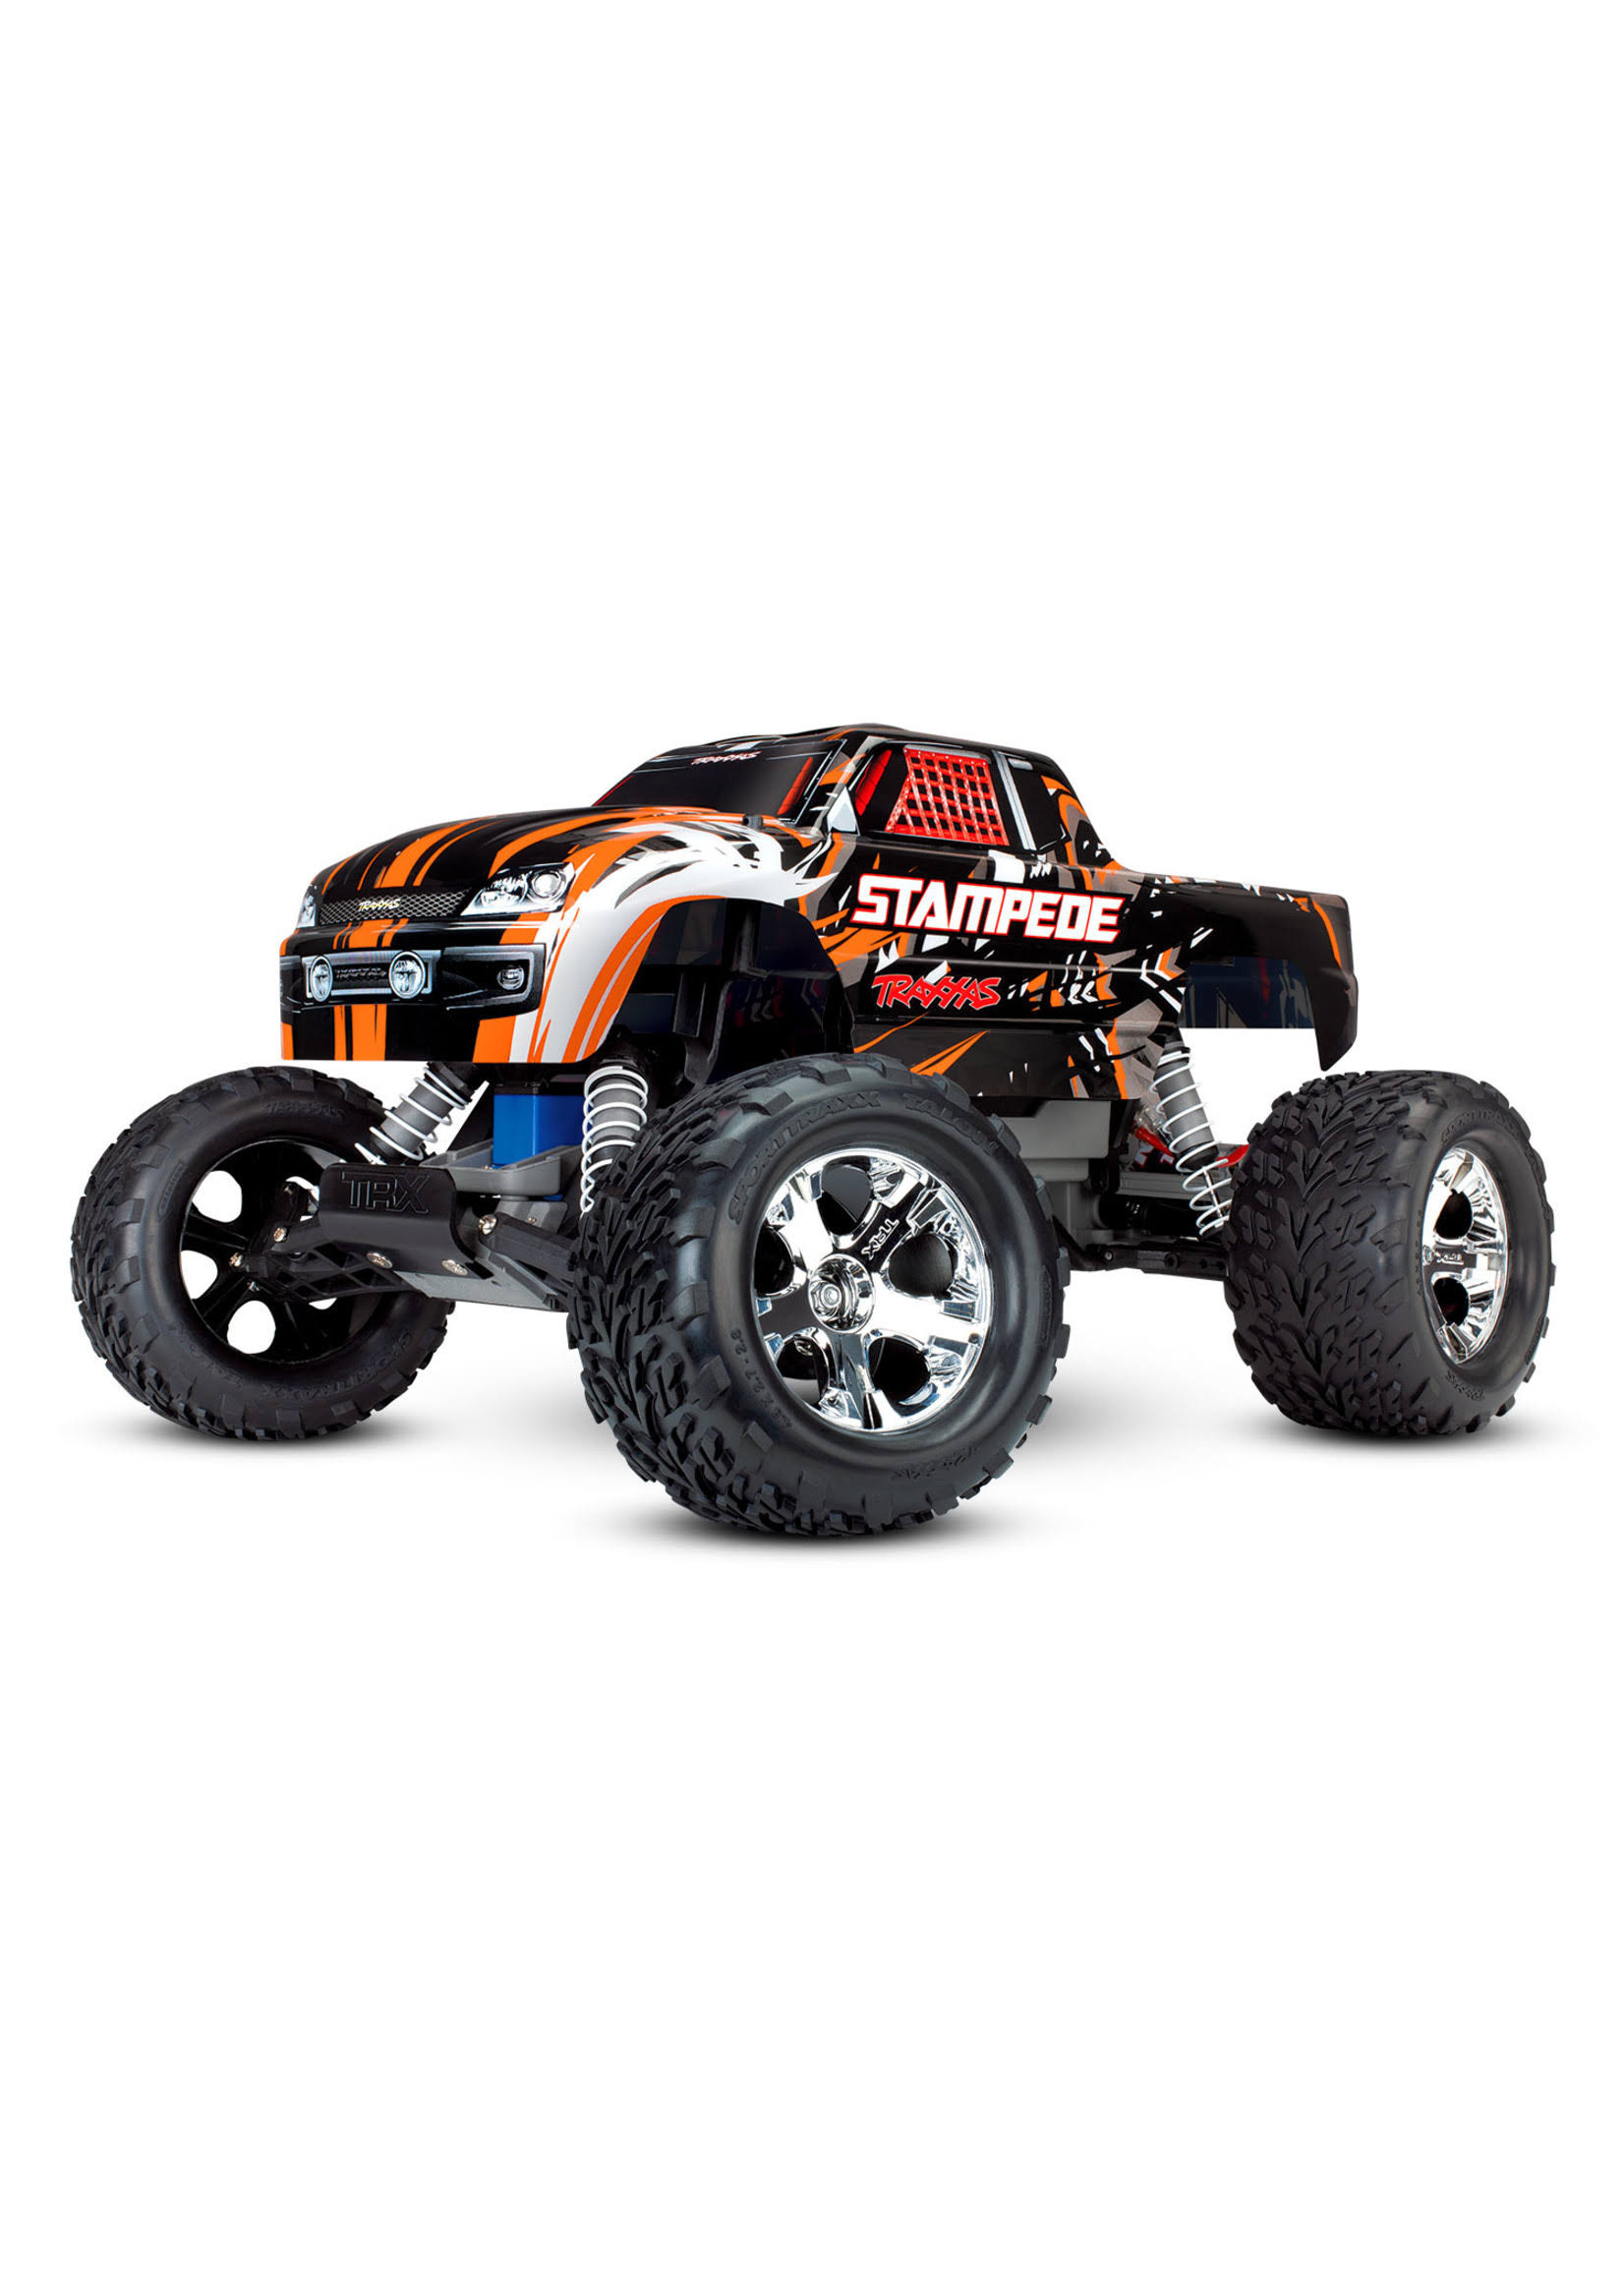 Traxxas Stampede Monster Truck 1:10 2.4GHz RTR (Orange)